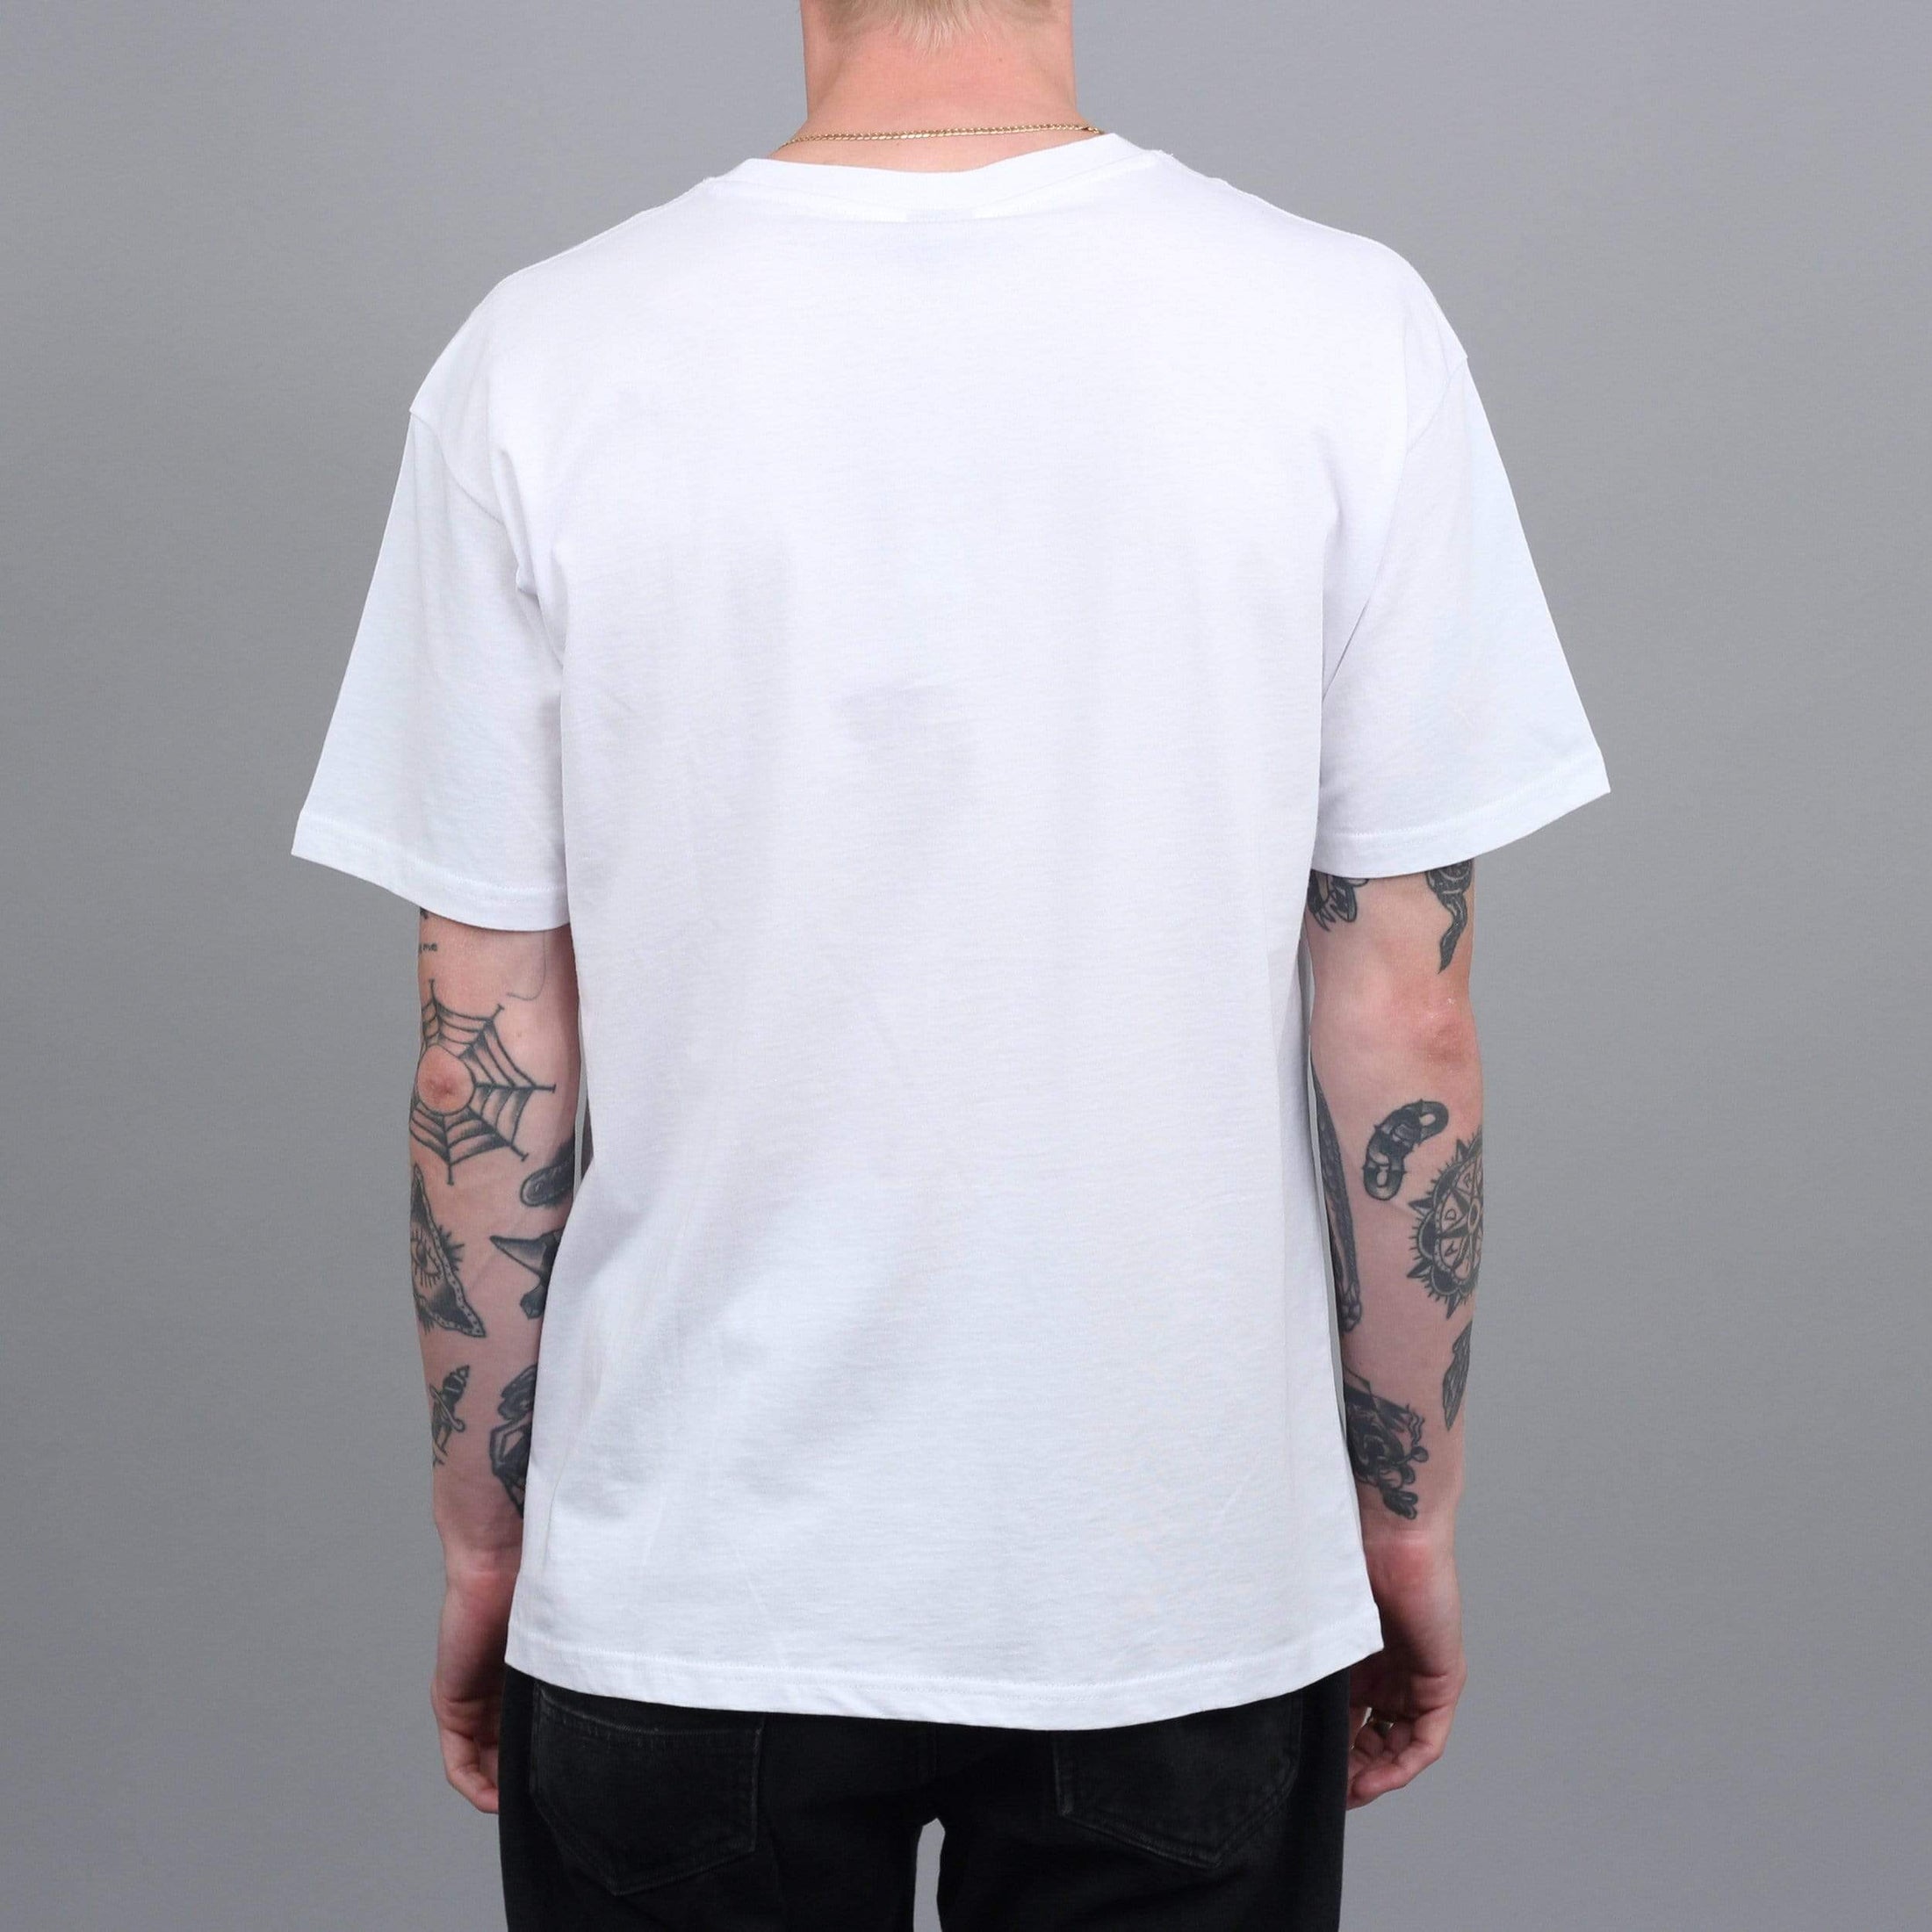 Slam City Skates Keys T-Shirt White